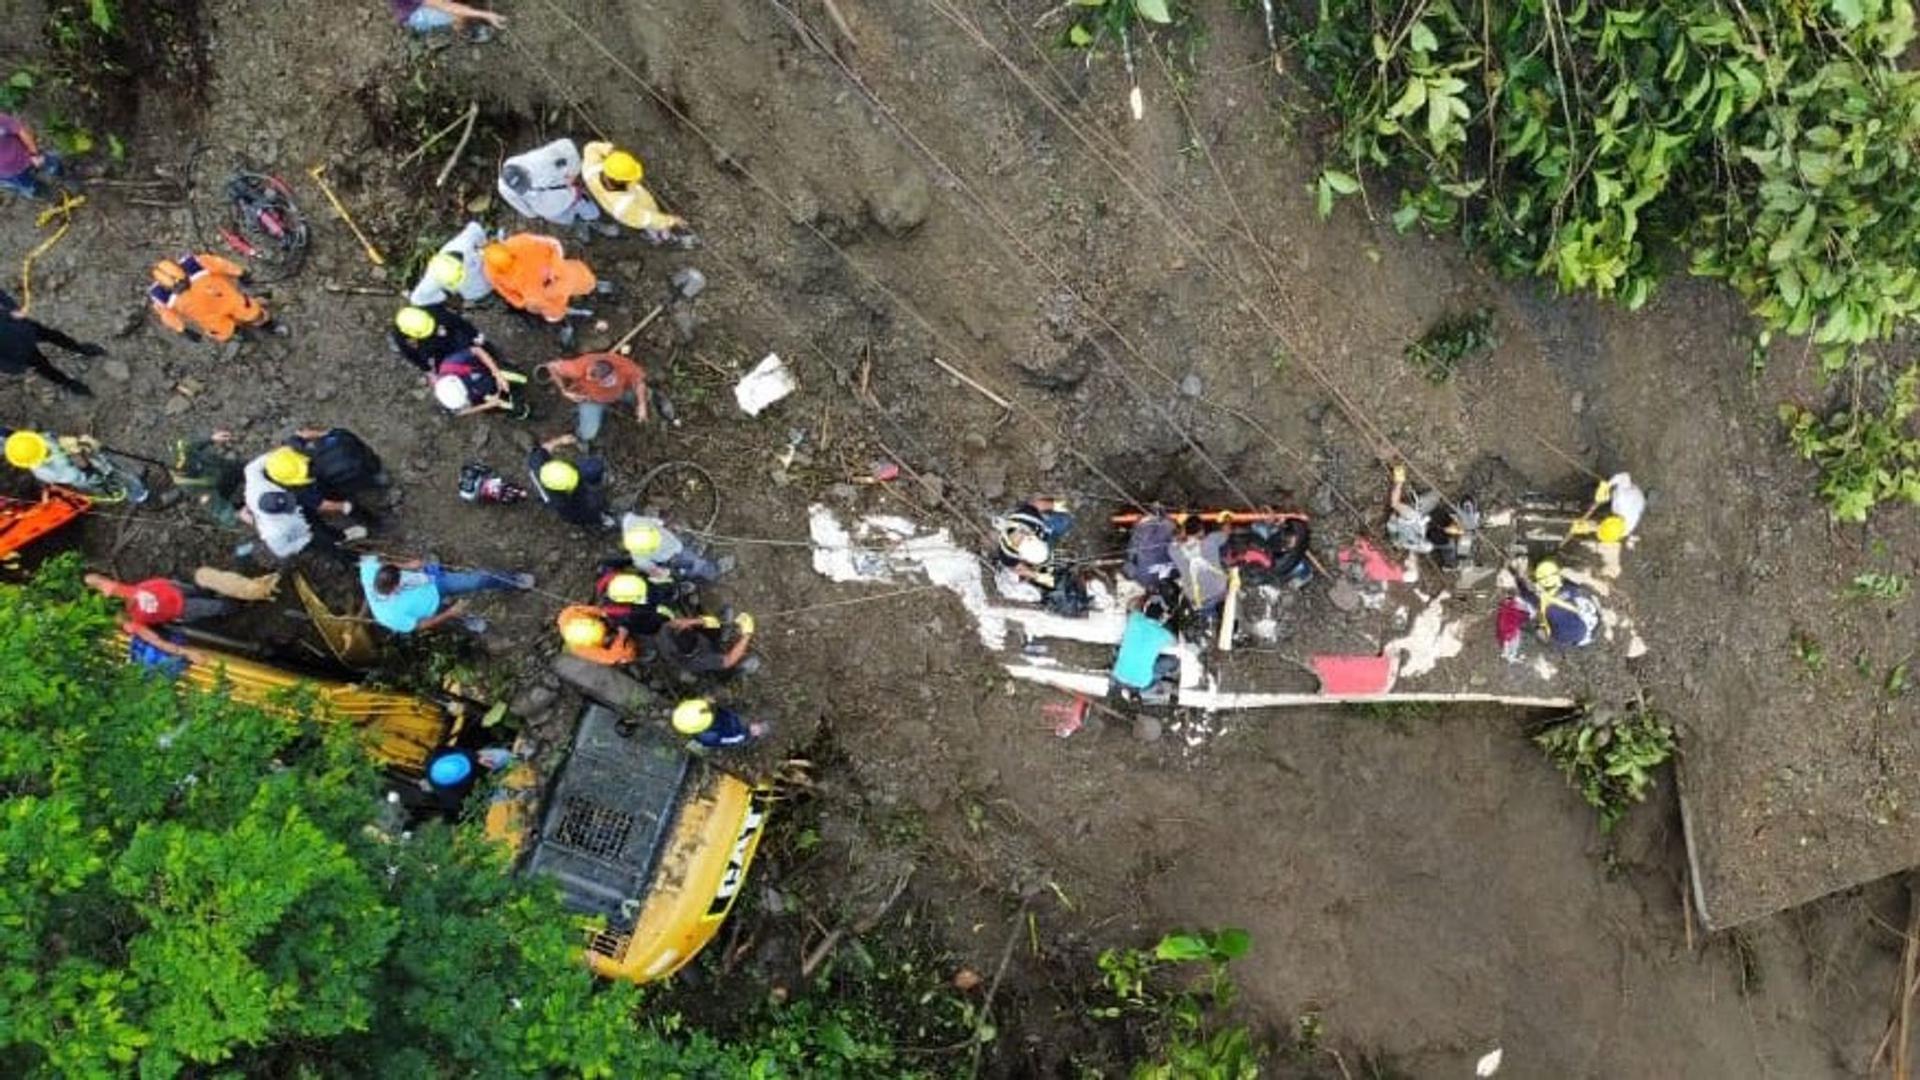 Rettungseinheiten sind im kolumbianischen Risaralda im Einsatz, nachdem Passagiere eines Busses von einem Erdrutsch verschüttet wurden.